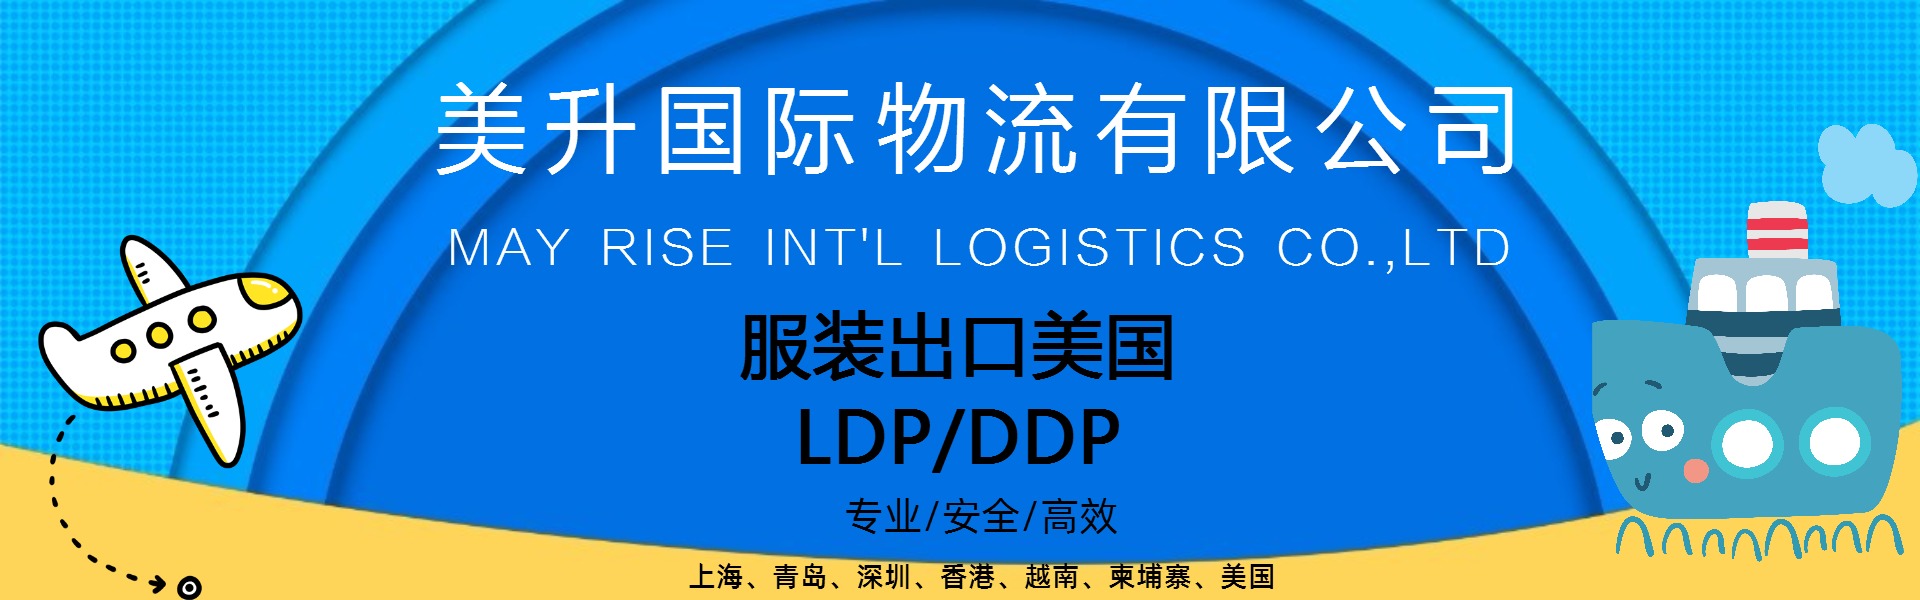 上海 厦门 盐田 天津 大连服装订单出口美国LDP/DDP